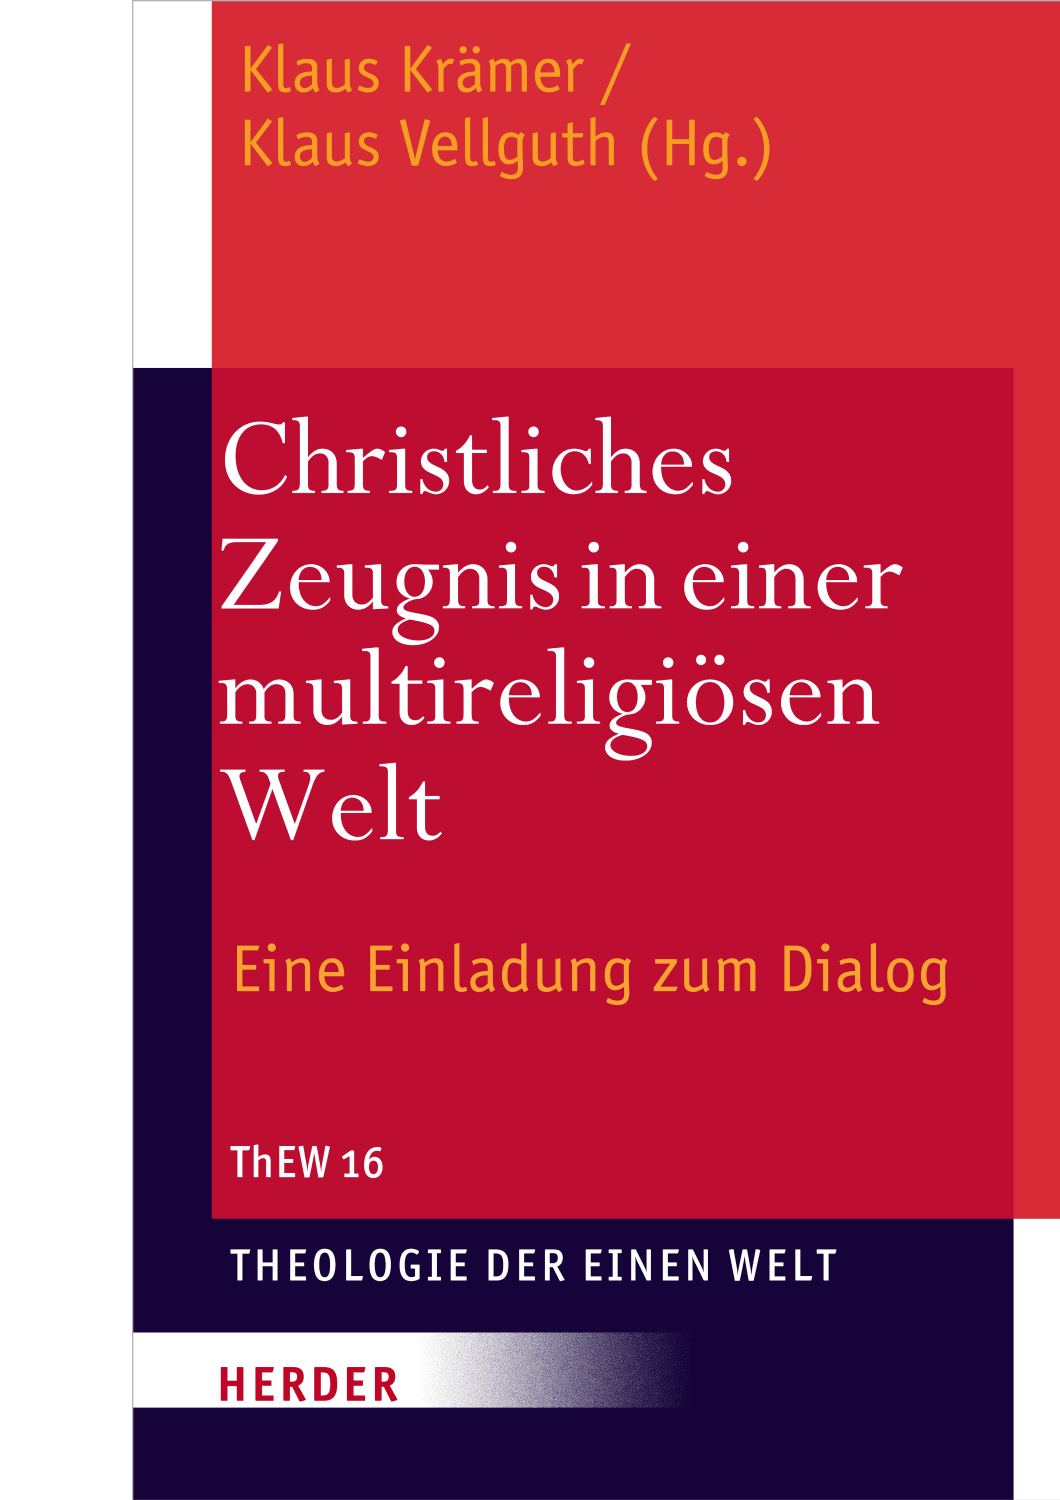 Theologie der Einen Welt (ThEW 16): Christliches Zeugnis einer multireligiösen Welt